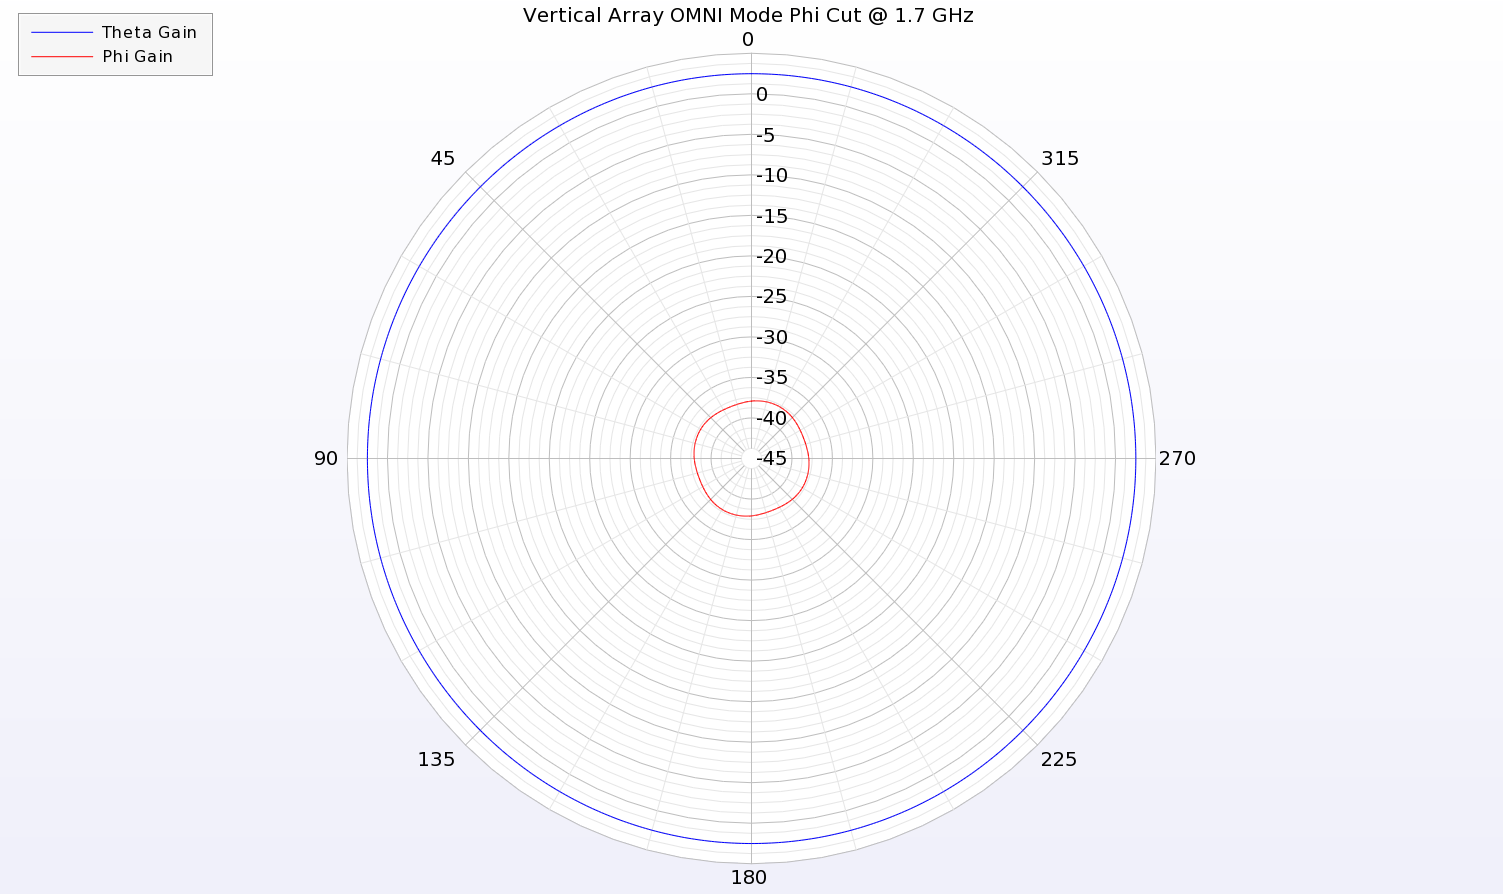 Figura 11: Un corte azimutal del patrón a 1,7 GHz muestra una ganancia uniforme de la polarización vertical (Theta) para el conjunto monopolar eléctrico en modo OMNI.